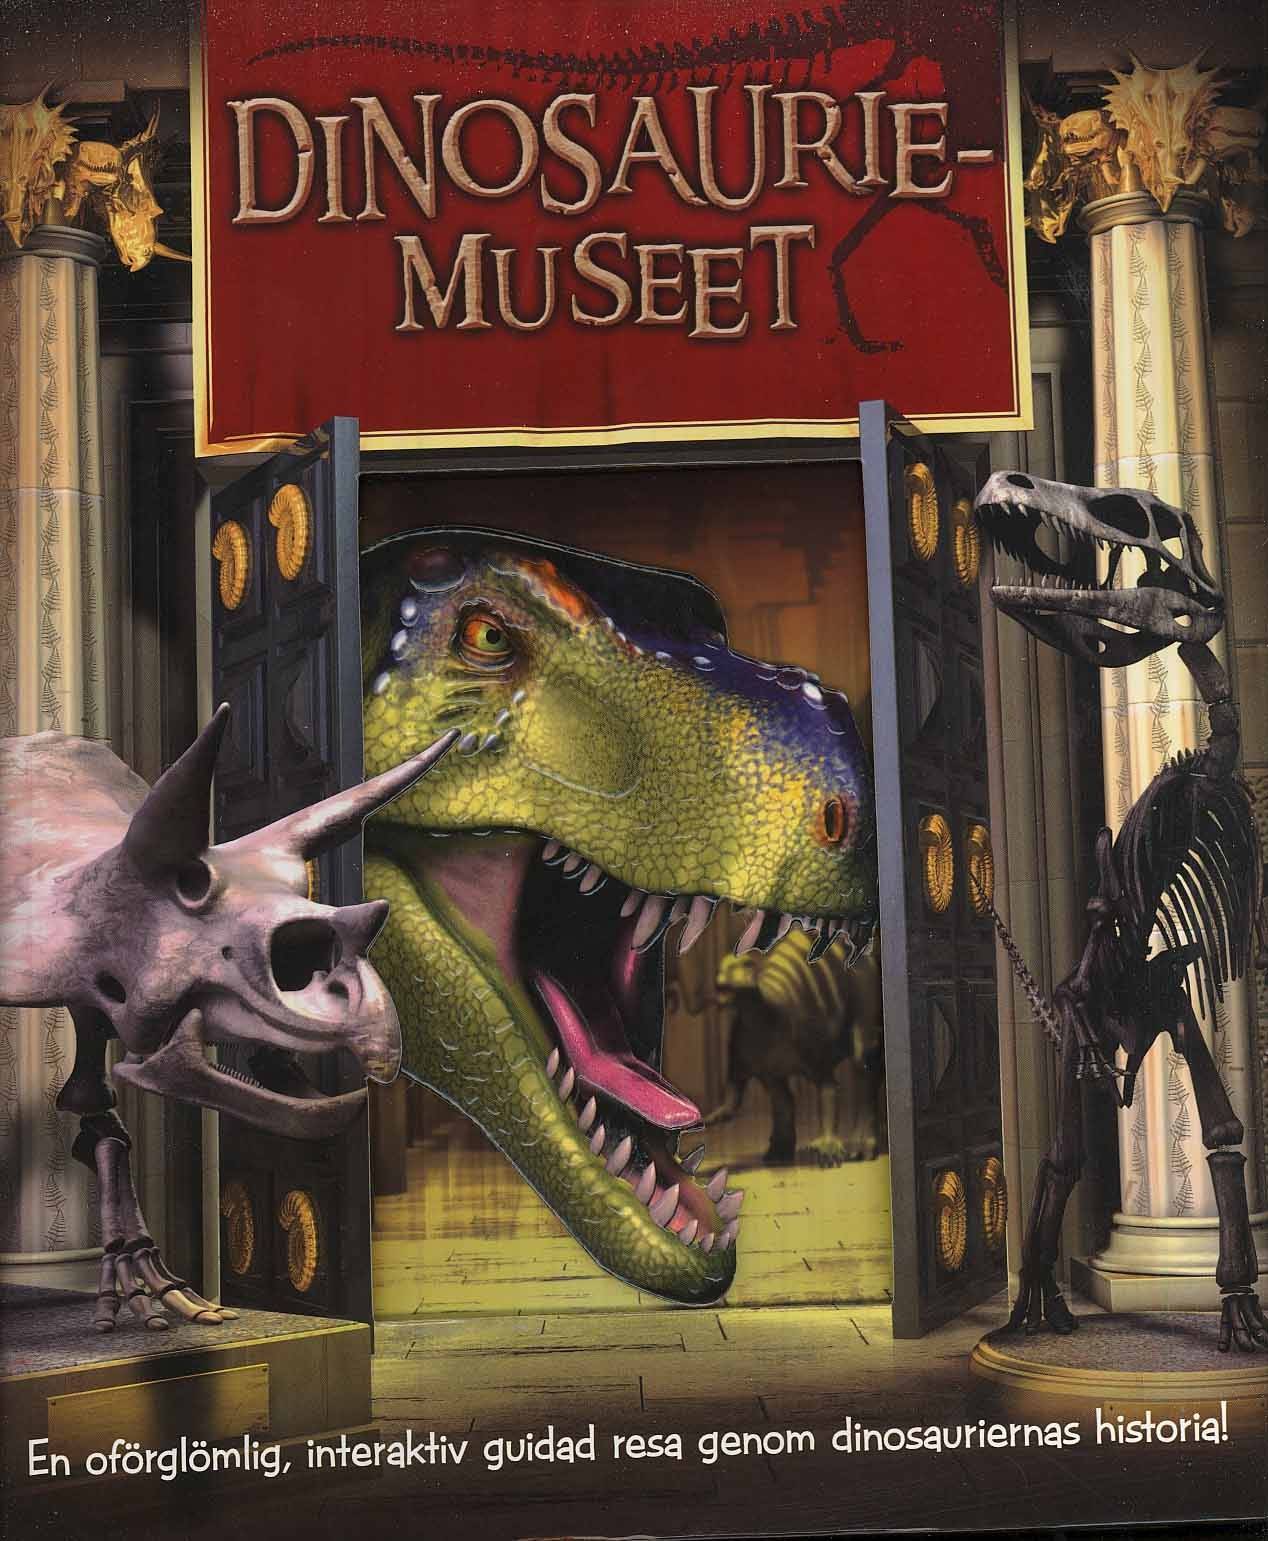 Dinosauriemuseet